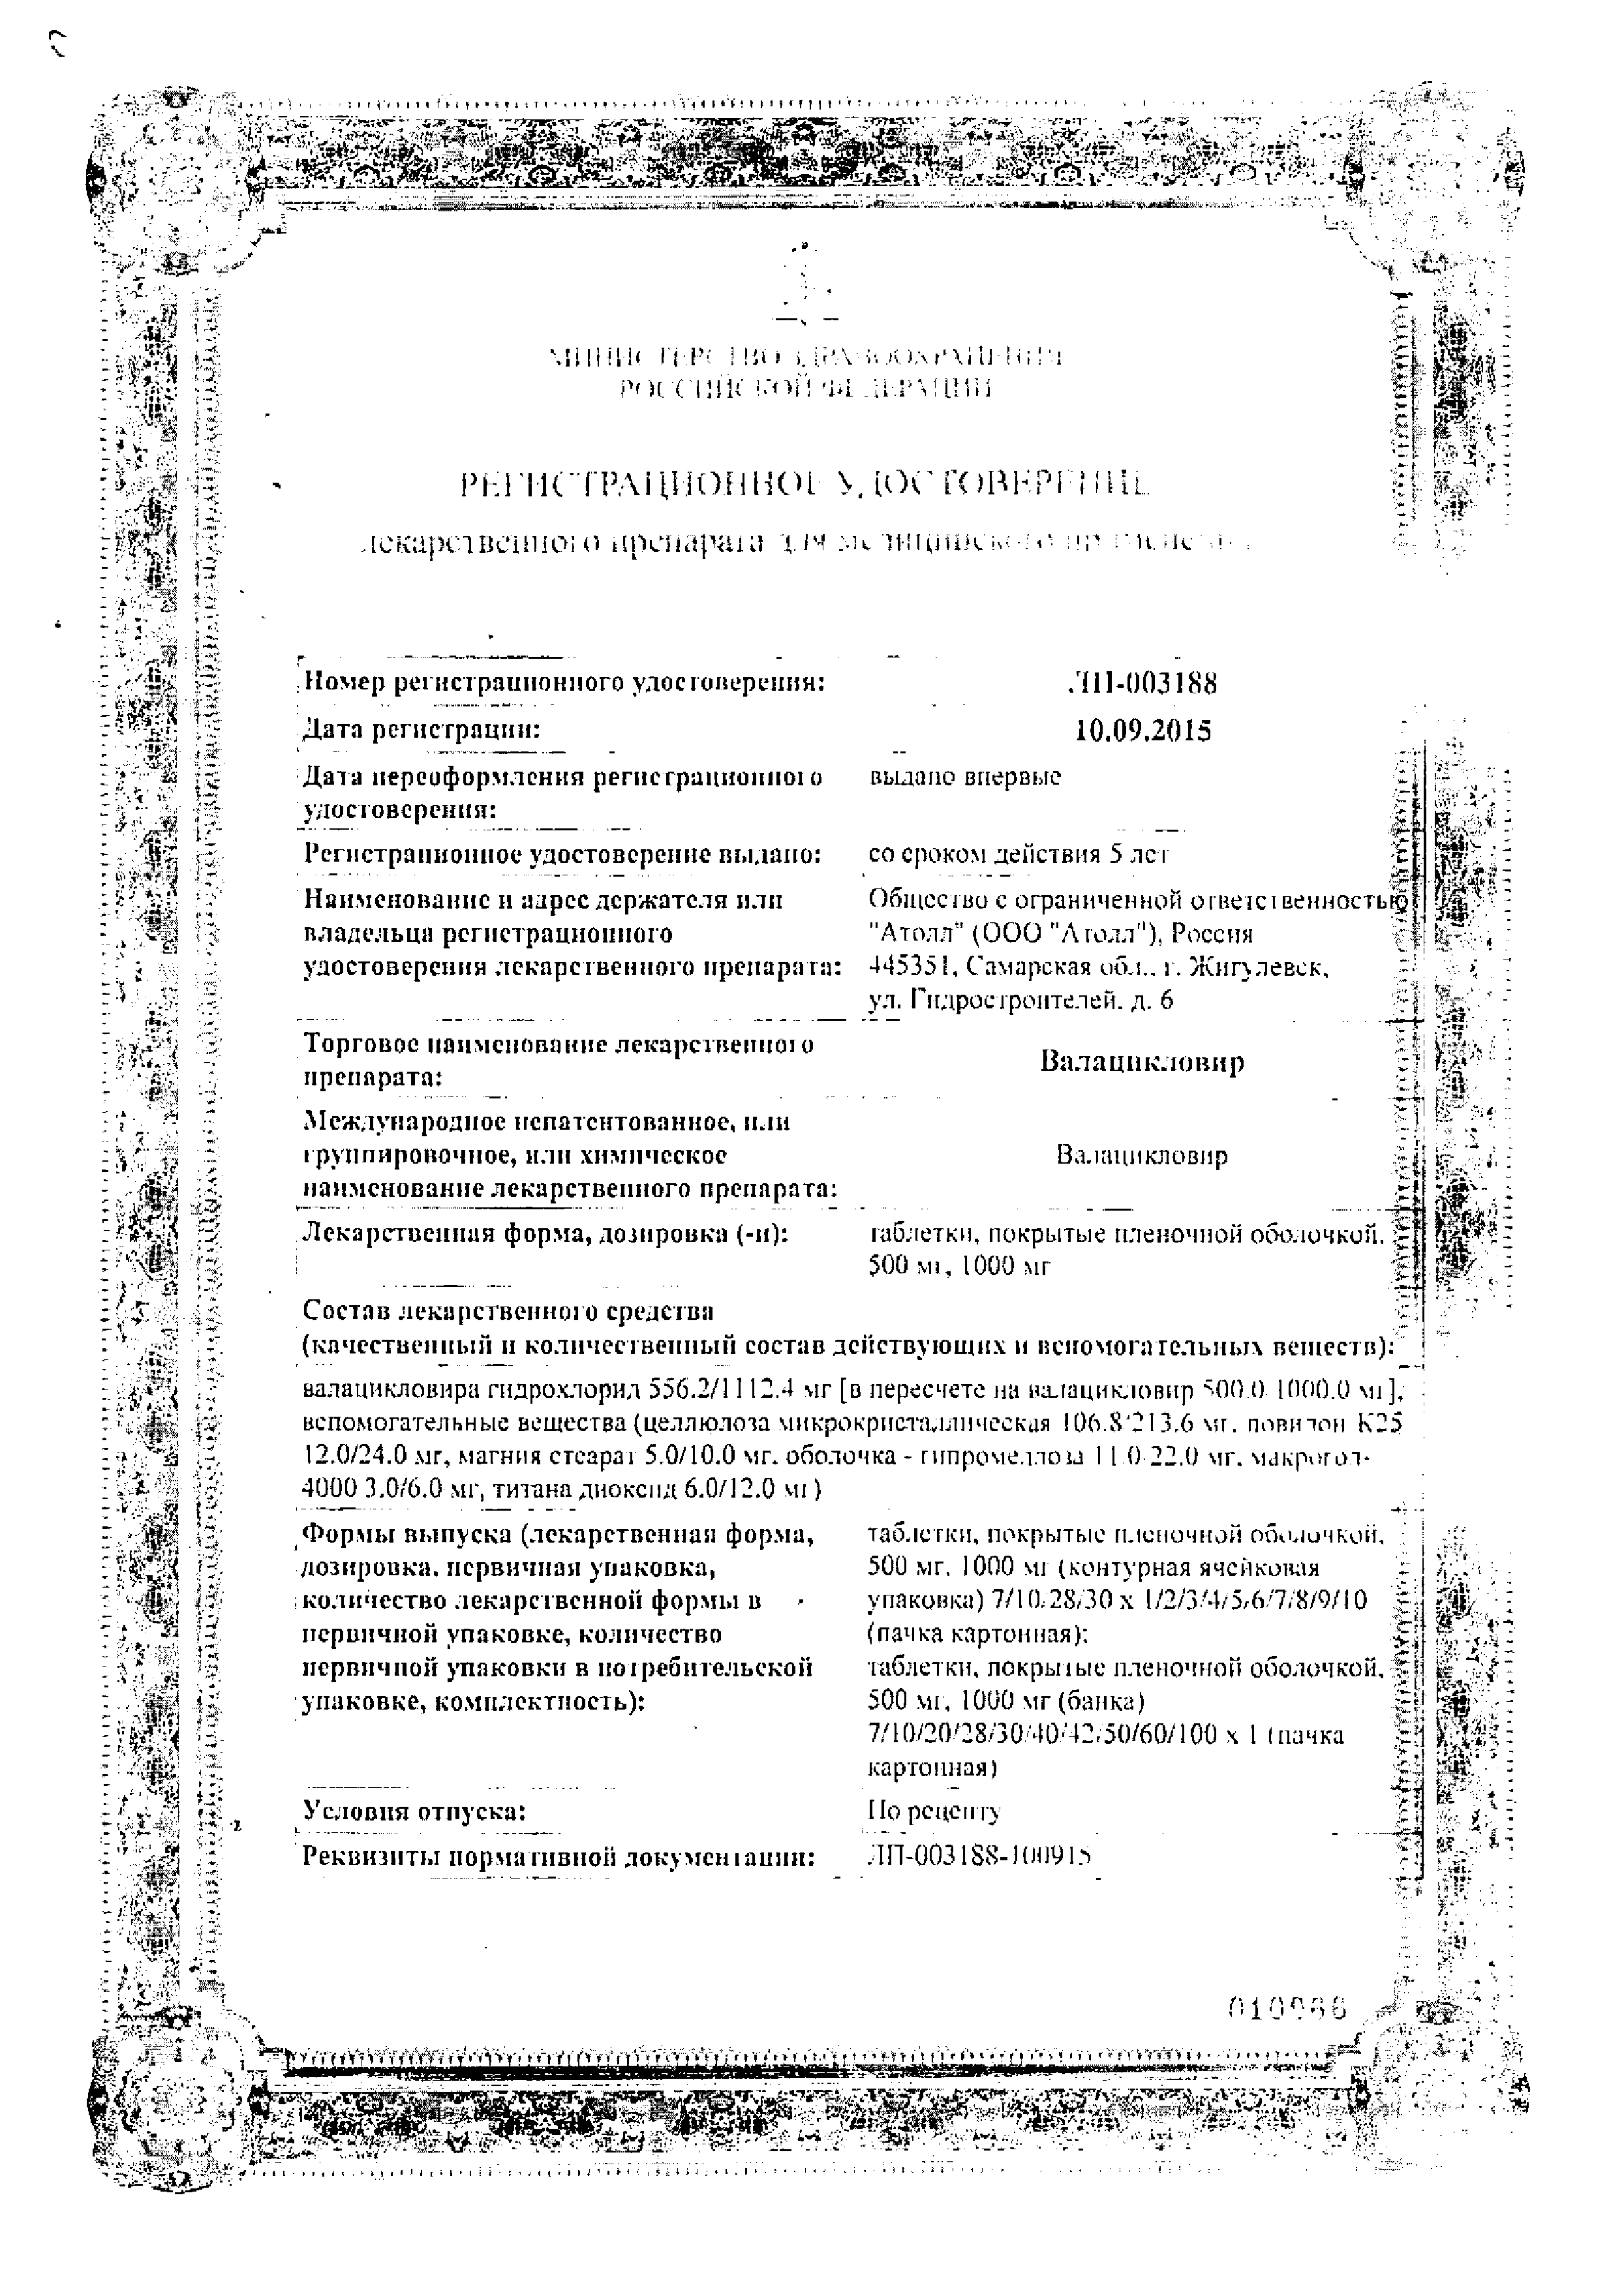 Валацикловир сертификат